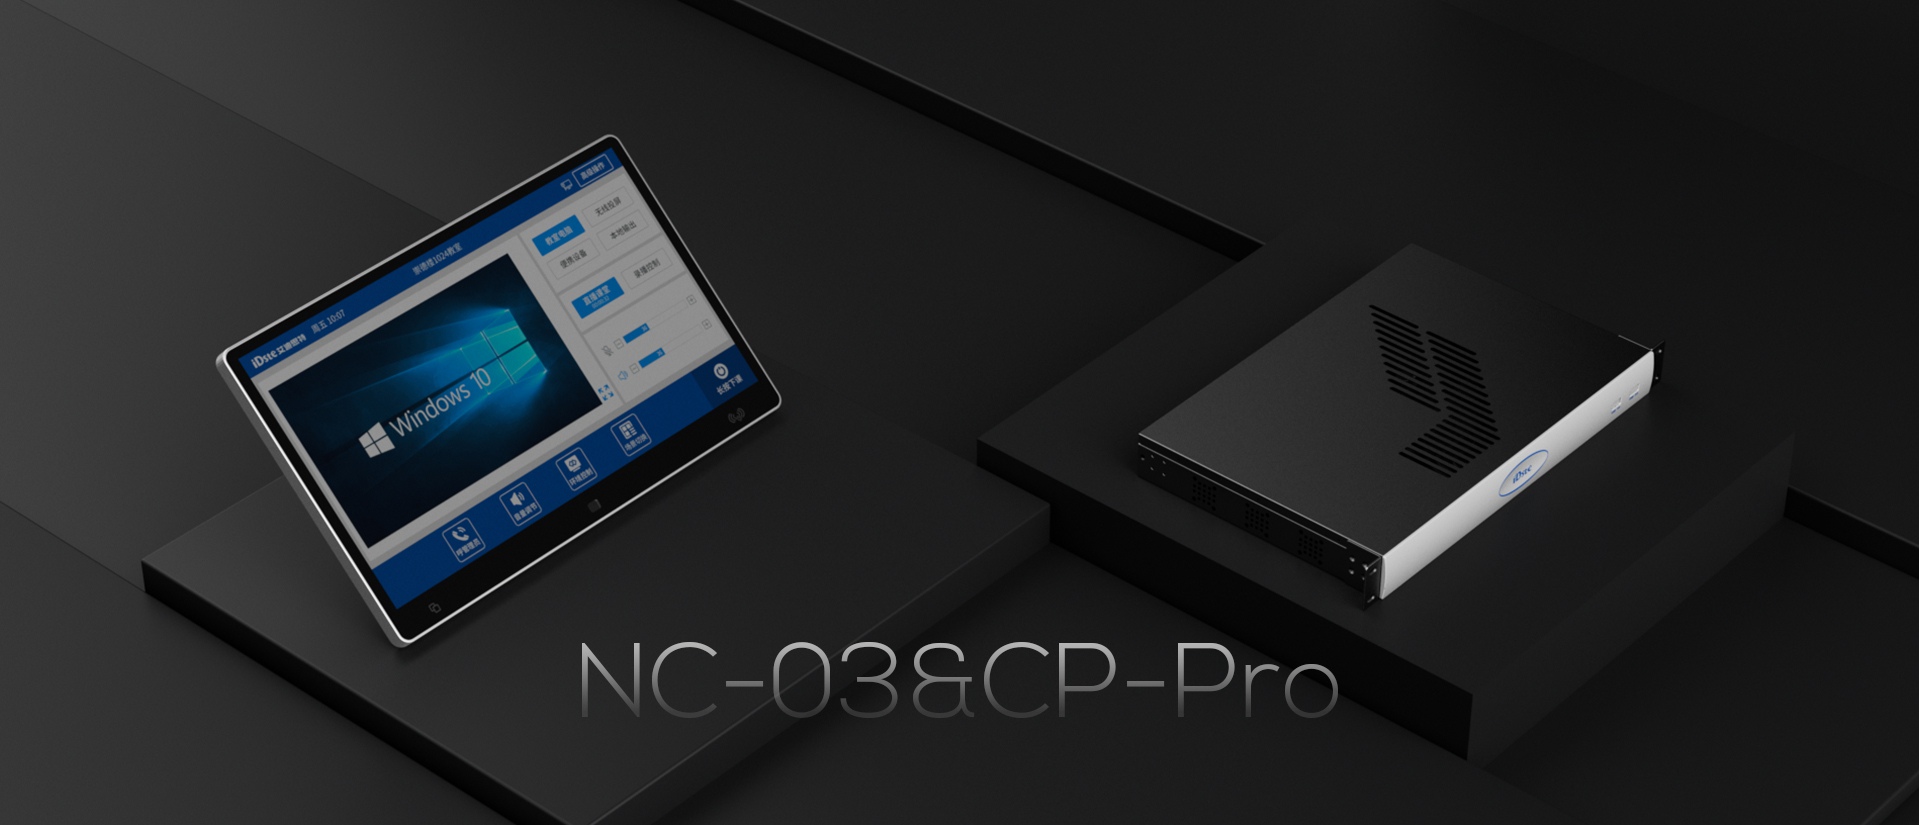 智能融合信息终端NC-03&CP-Pro